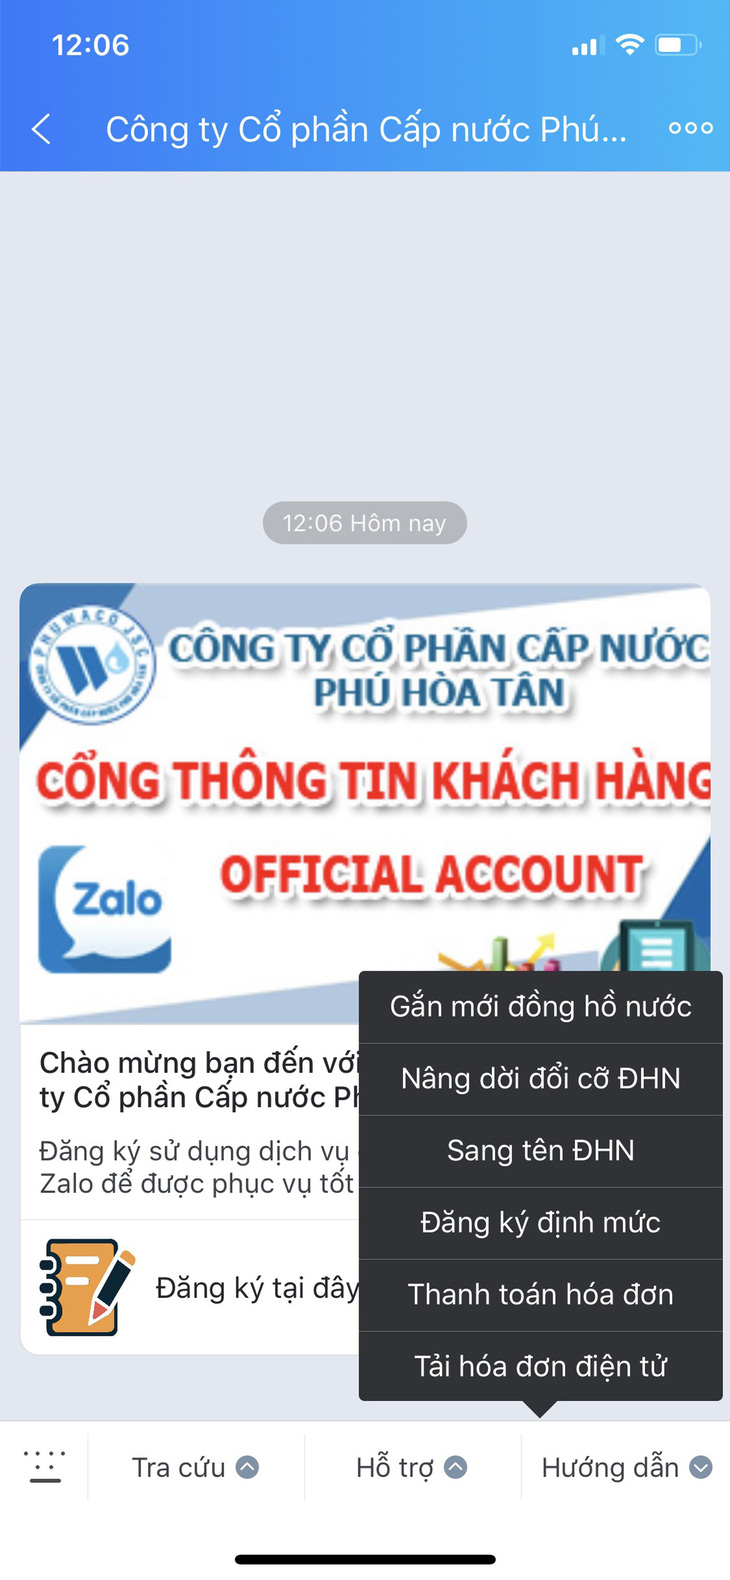 Cấp nước Phú Hòa Tân ứng dụng Zalo chăm sóc khách hàng - Ảnh 1.